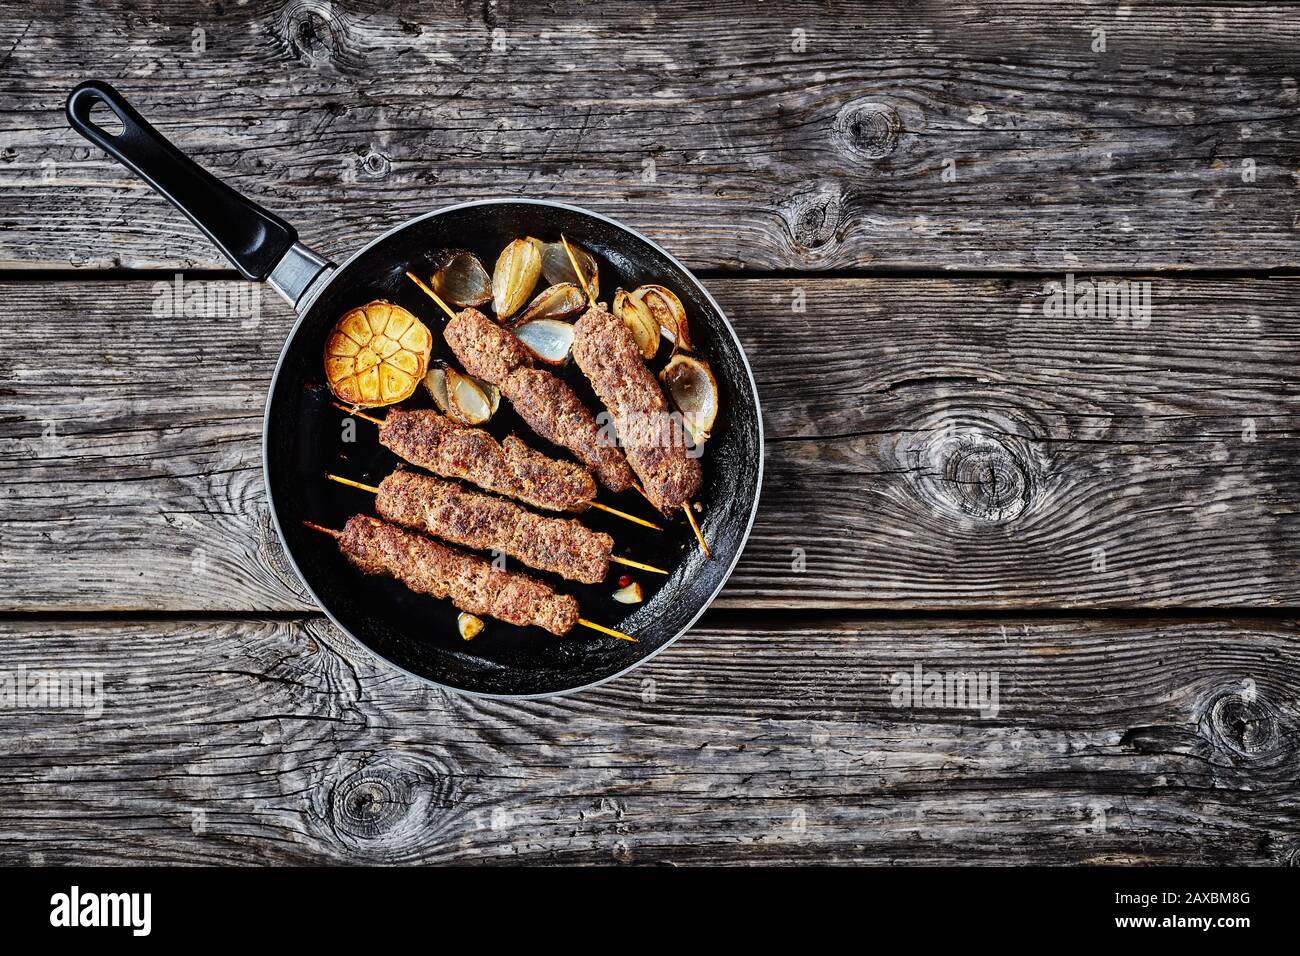 Piatto mediterraneo: Kofta kebab di carne macinata di agnello arrosto su spiedini con spezie mix: Sumac, allspezia, noce moscata servito su una padella con aglio e oni Foto Stock